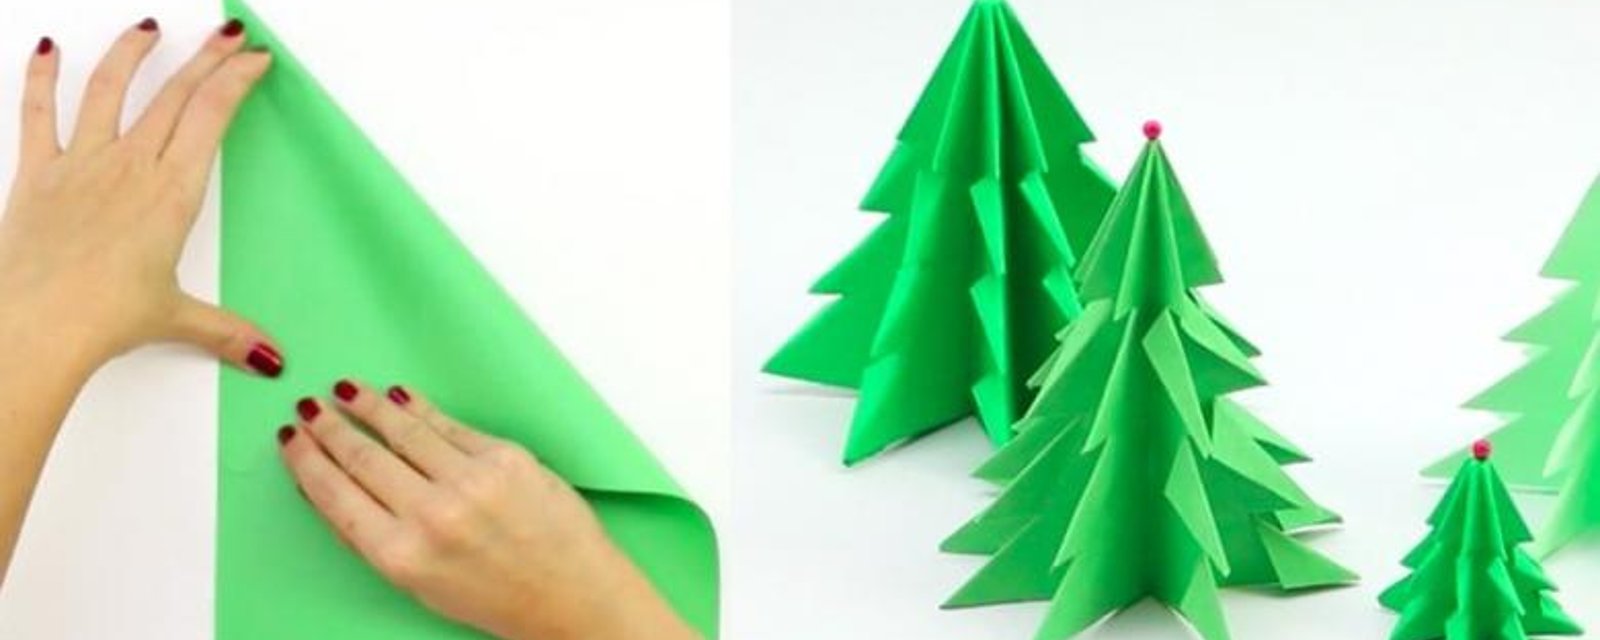 Bricolez de magnifiques sapins de Noël avec les enfants, à partir de simples feuilles de papier! 